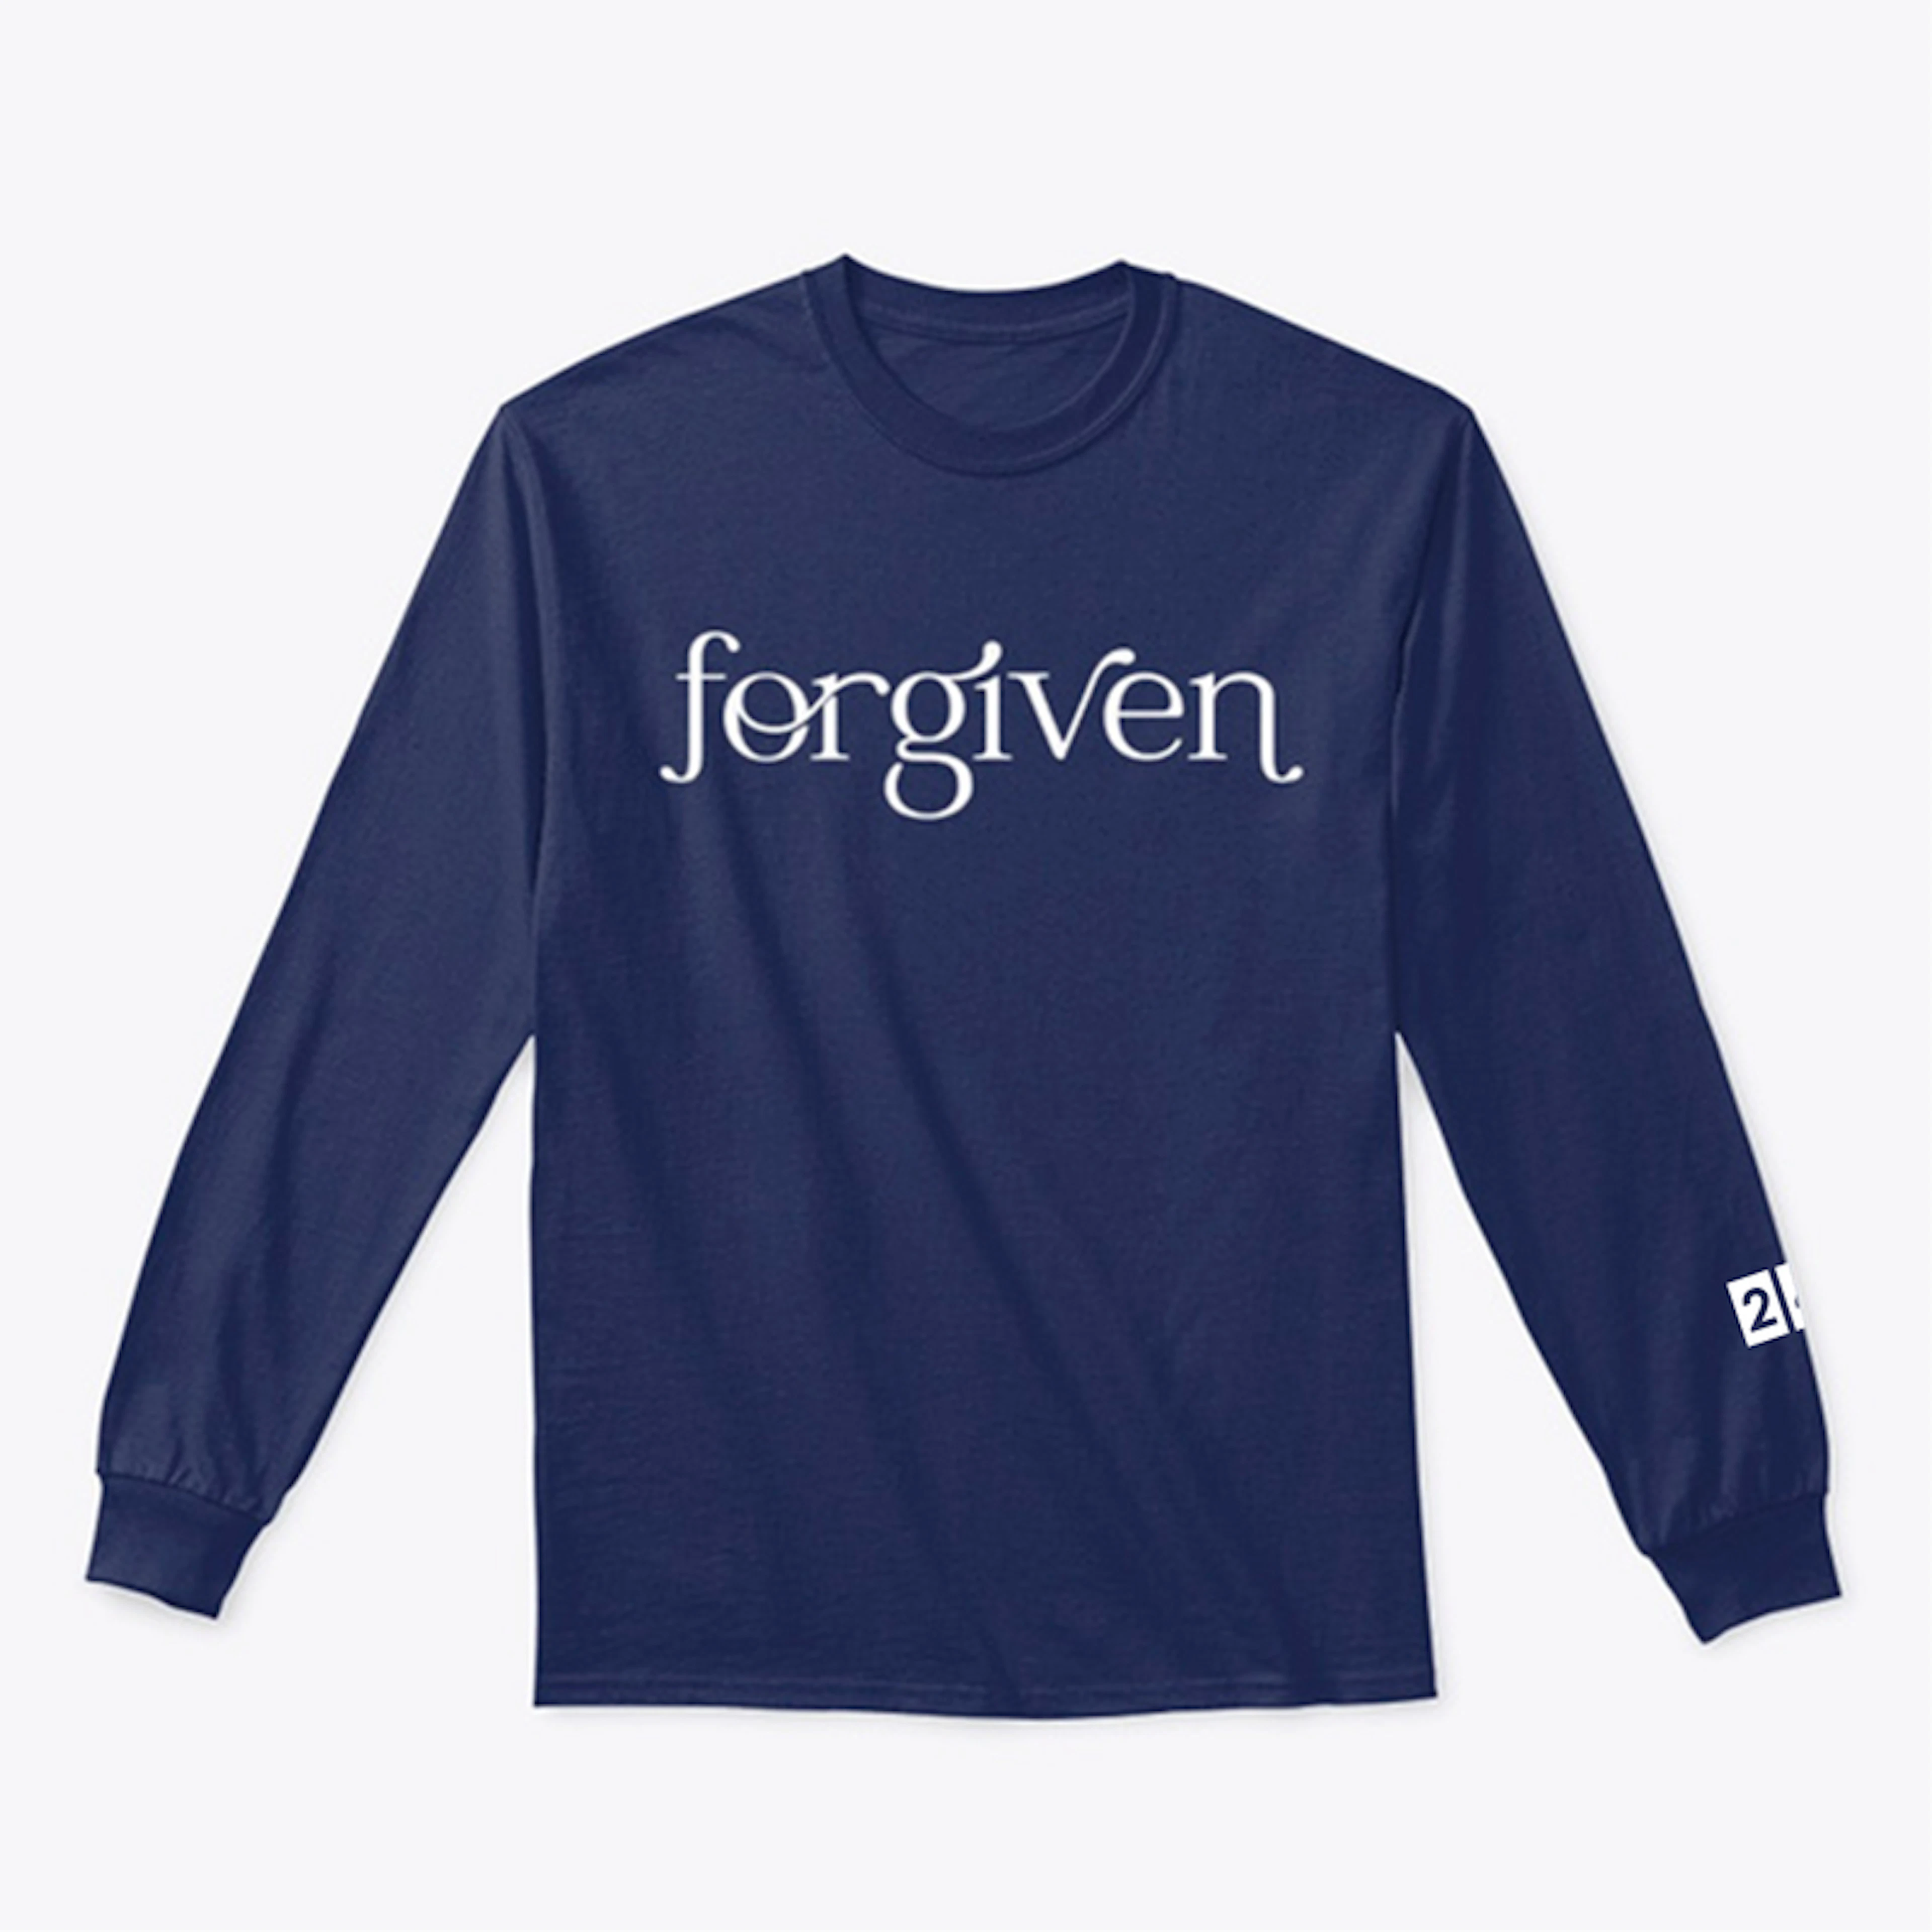 Forgiven - Long Sleeve